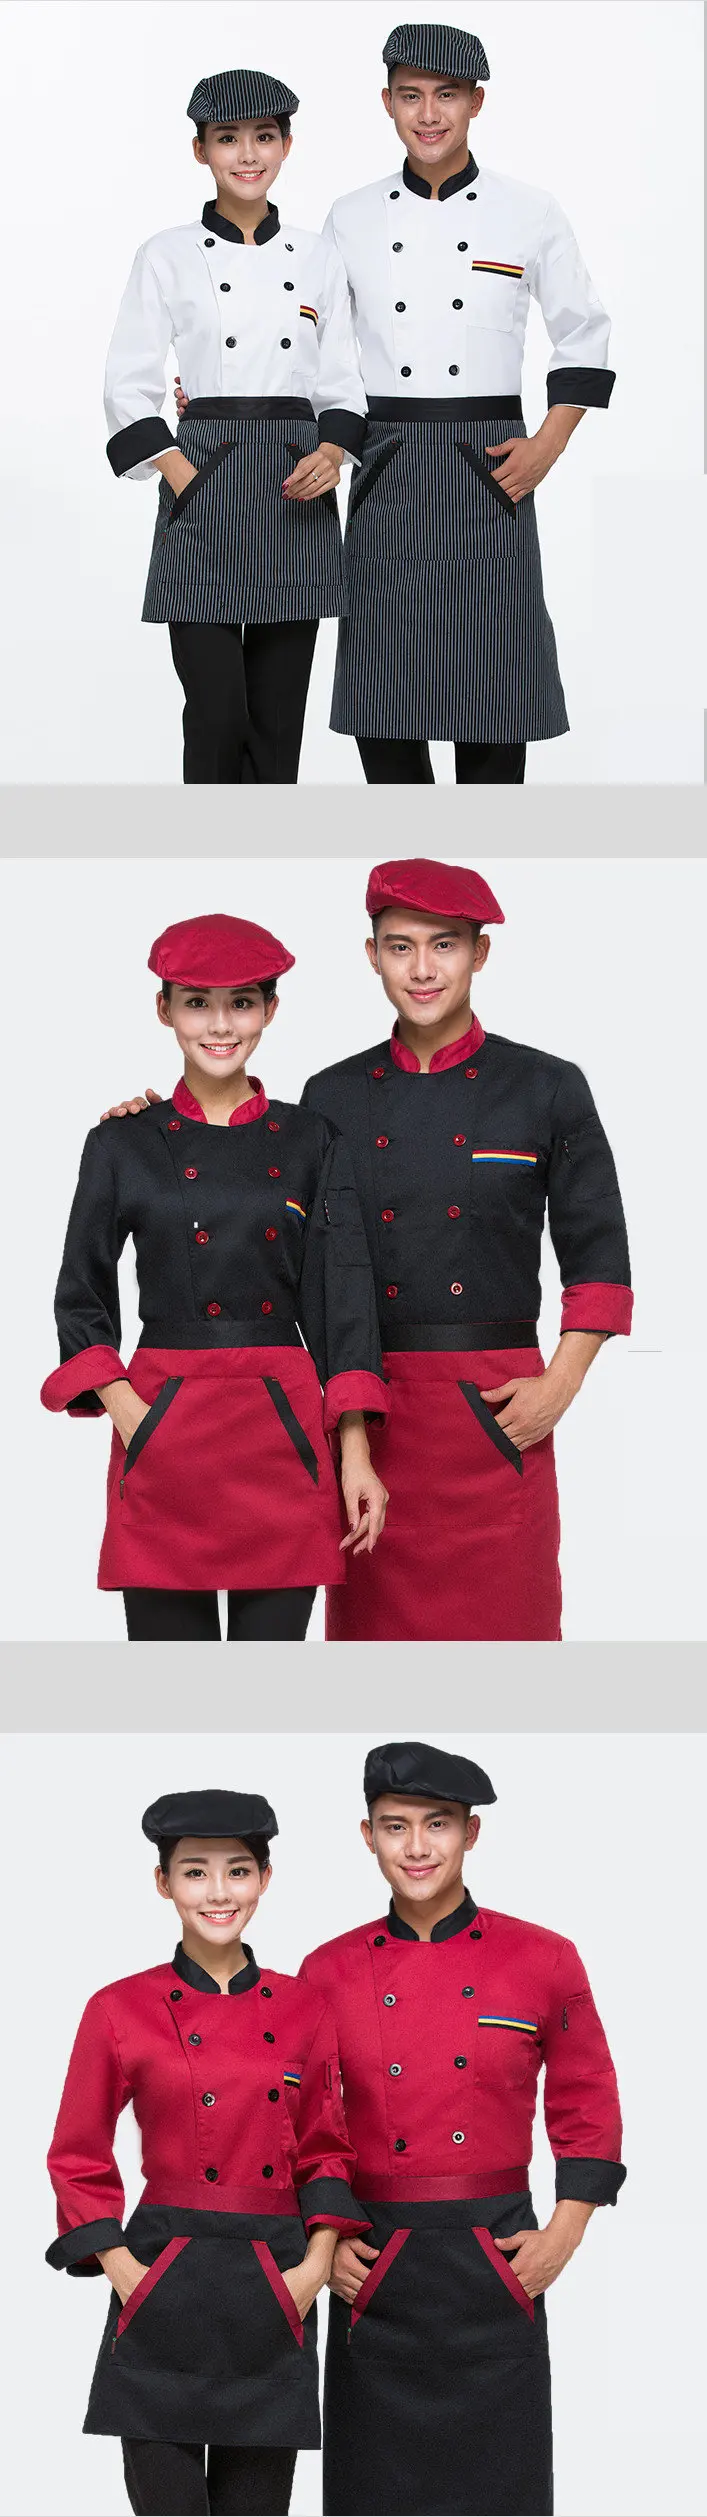 Высокое качество 2019 лето с короткими рукавами услуги повара jackte рабочая одежда отеля Ресторан рабочая одежда рабочие униформа повар Топы